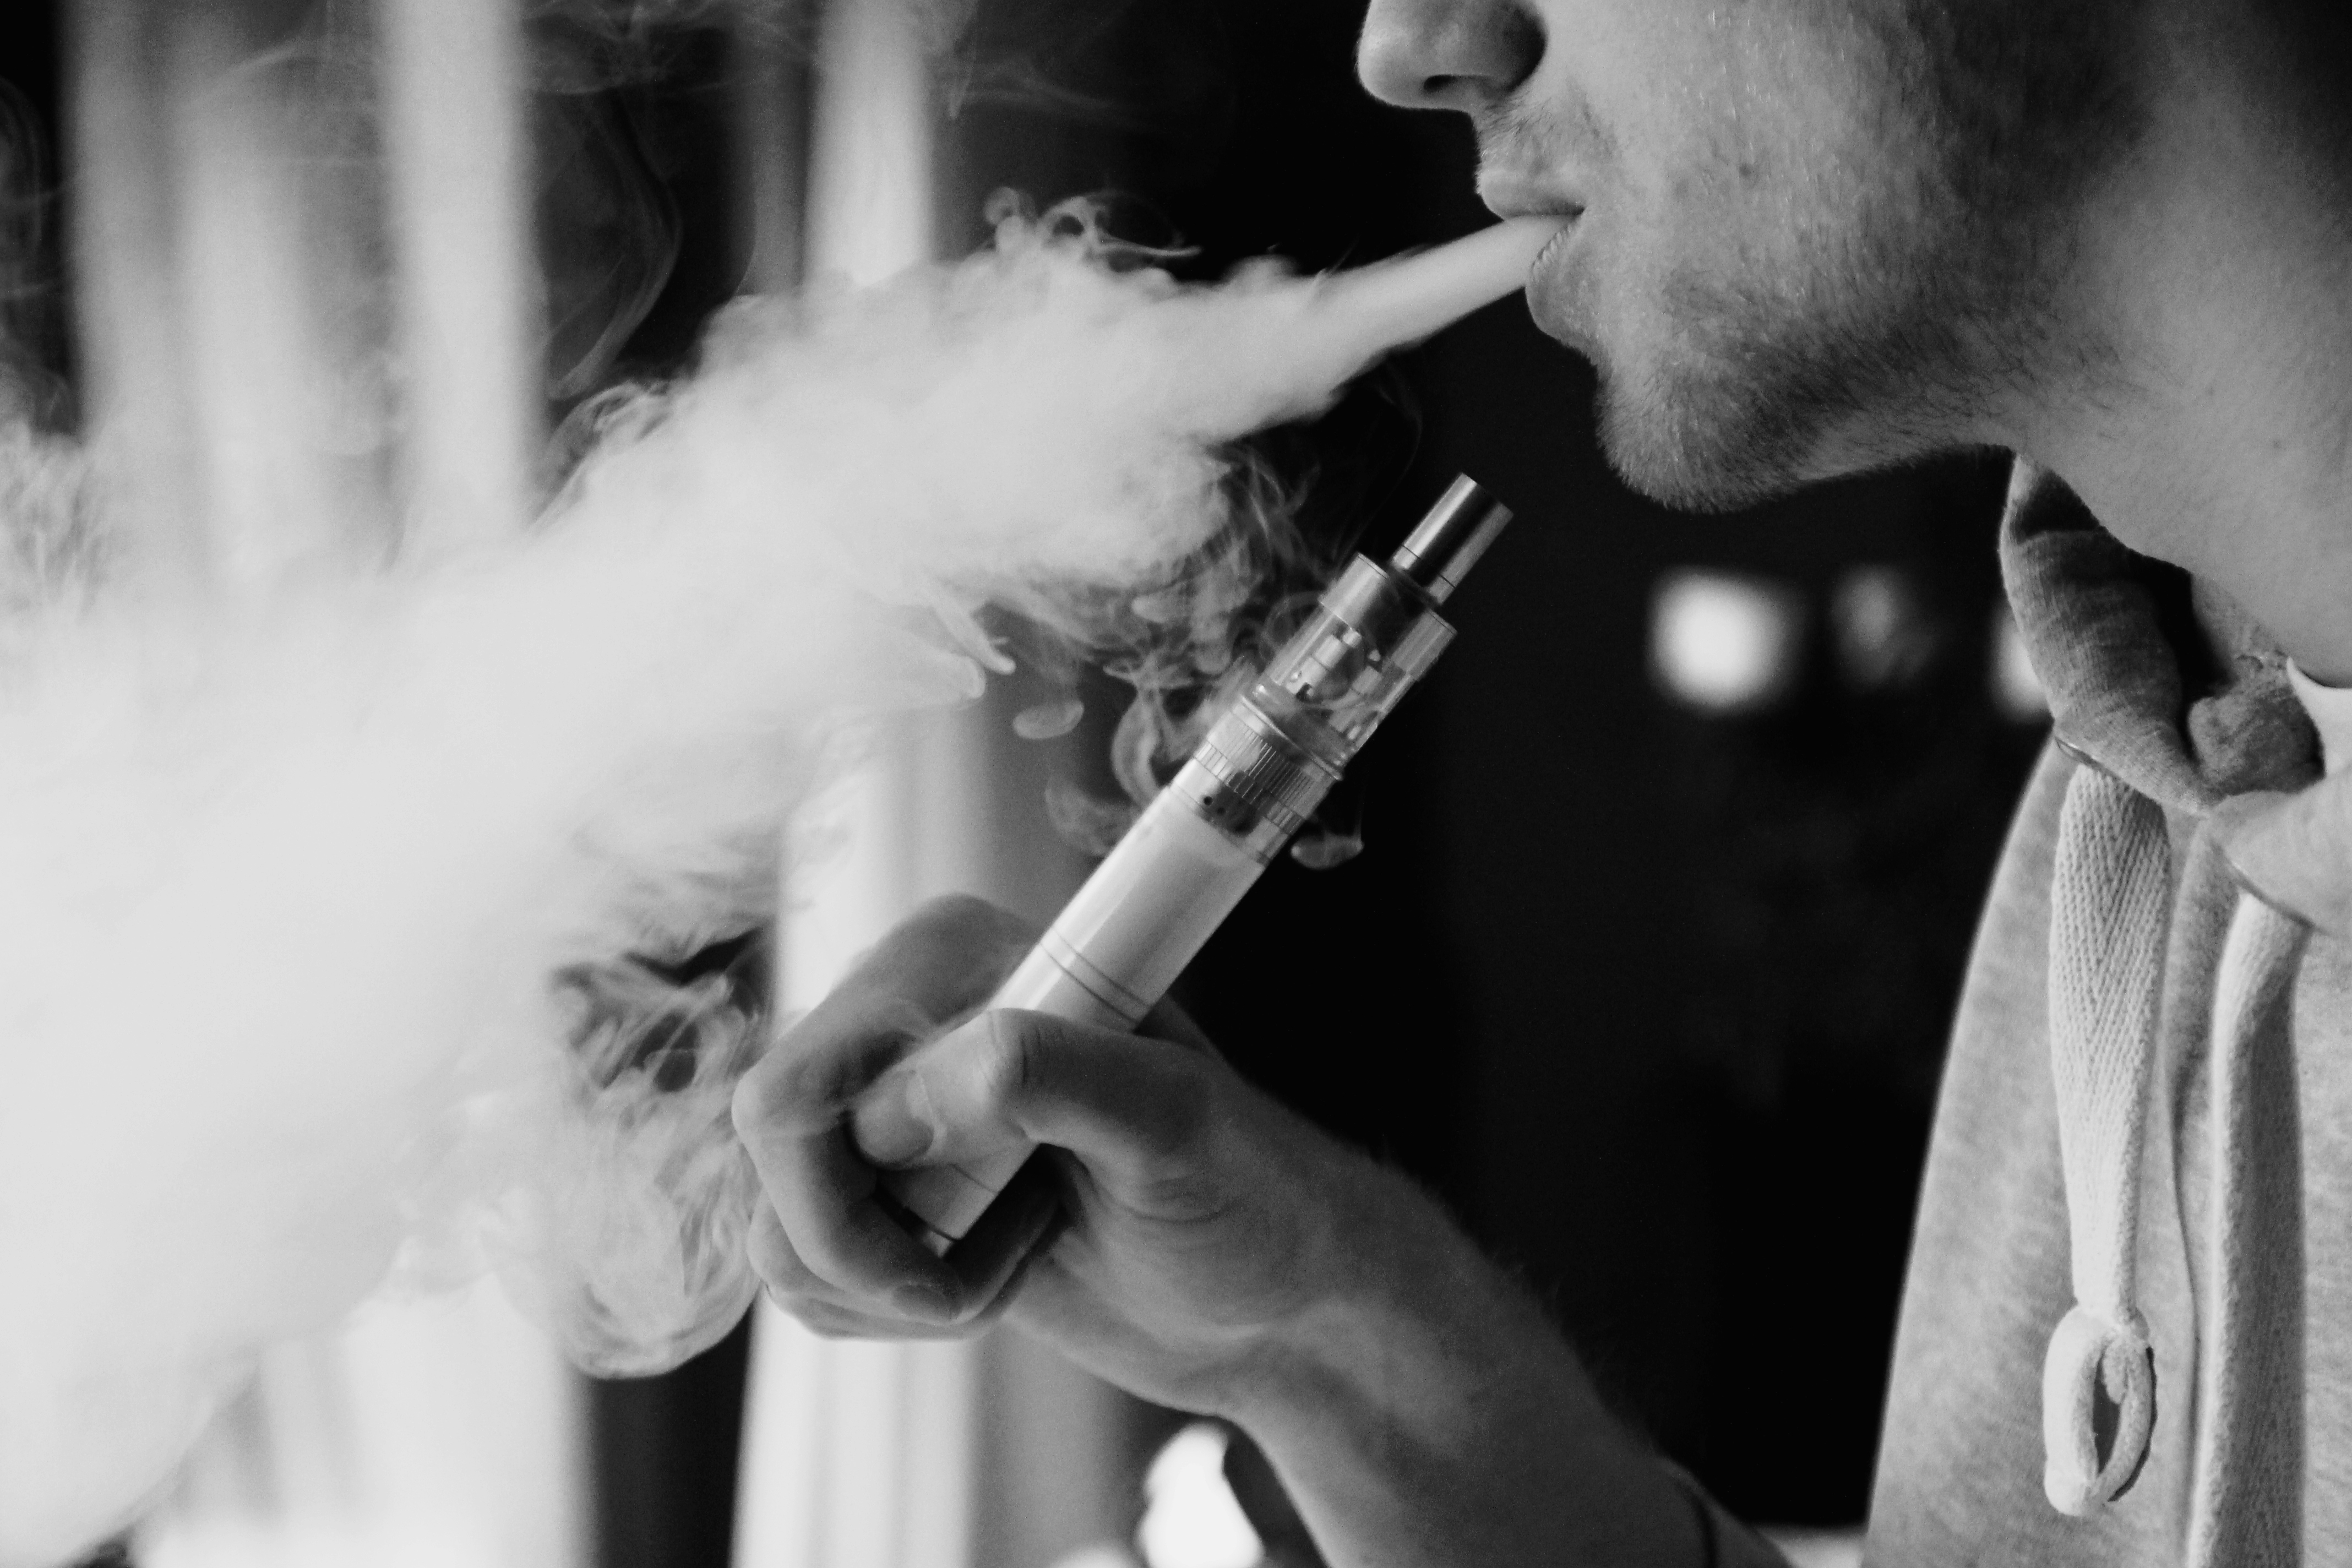 Вапе видео. Дым электронных сигарет. Курить электронные сигареты. Человек с электронной сигаретой. Электронная сигарета кальян.